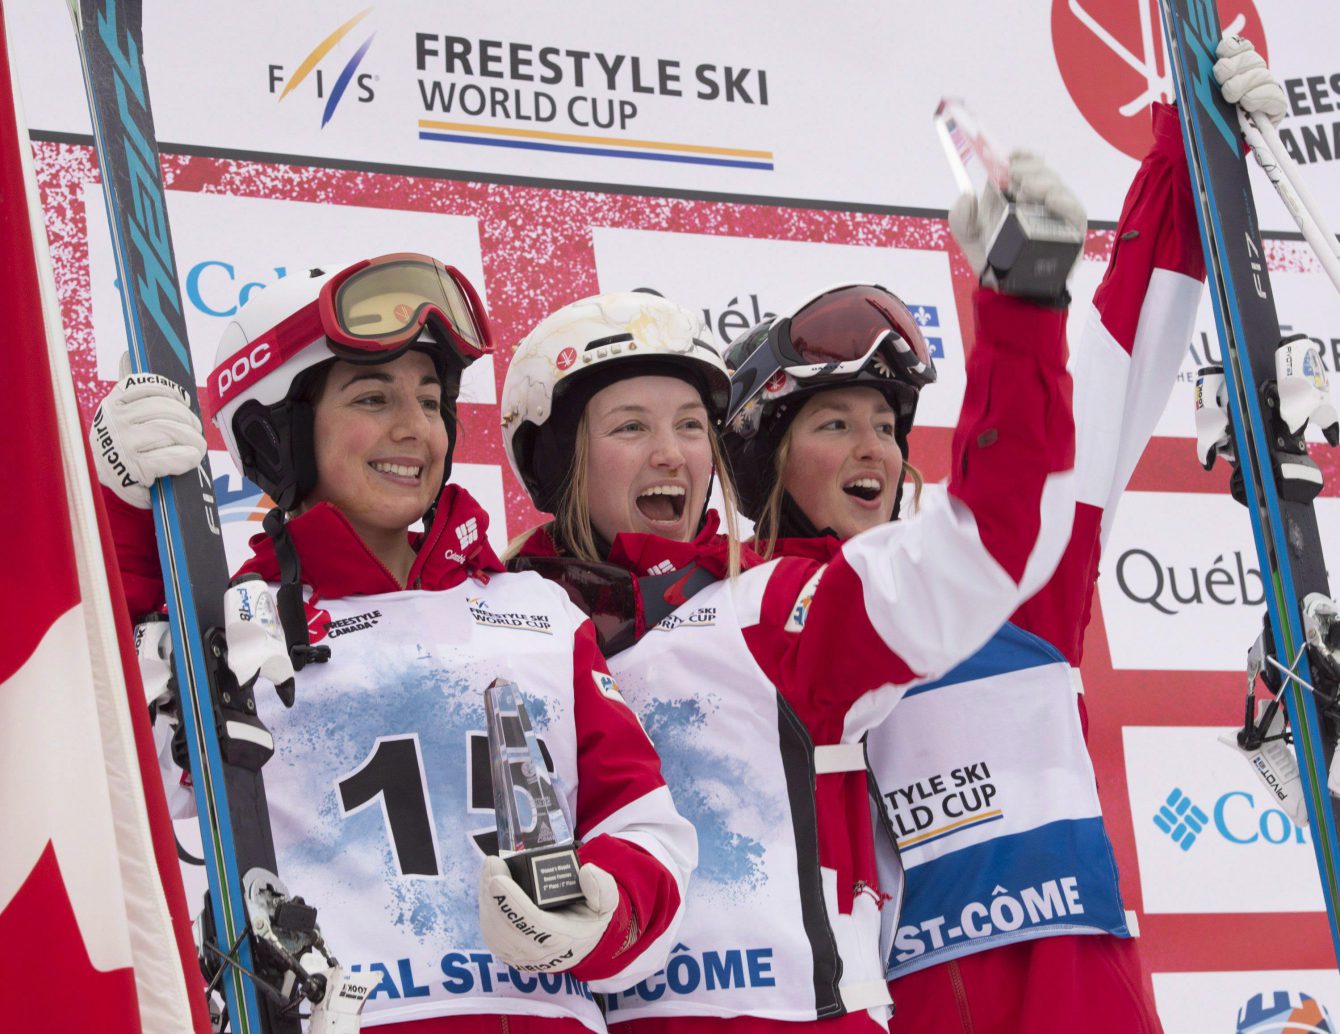 La skieuse acrobatique d'Équipe Canada Justine Dufour-Lapointe (centre) célèbre sa victoire à la Coupe du monde de Val St-Côme aux côtés de sa coéquipière Andi Naude (gauche) et sa soeur Chloé. (Photo : THE CANADIAN PRESS/Jacques Boissinot)